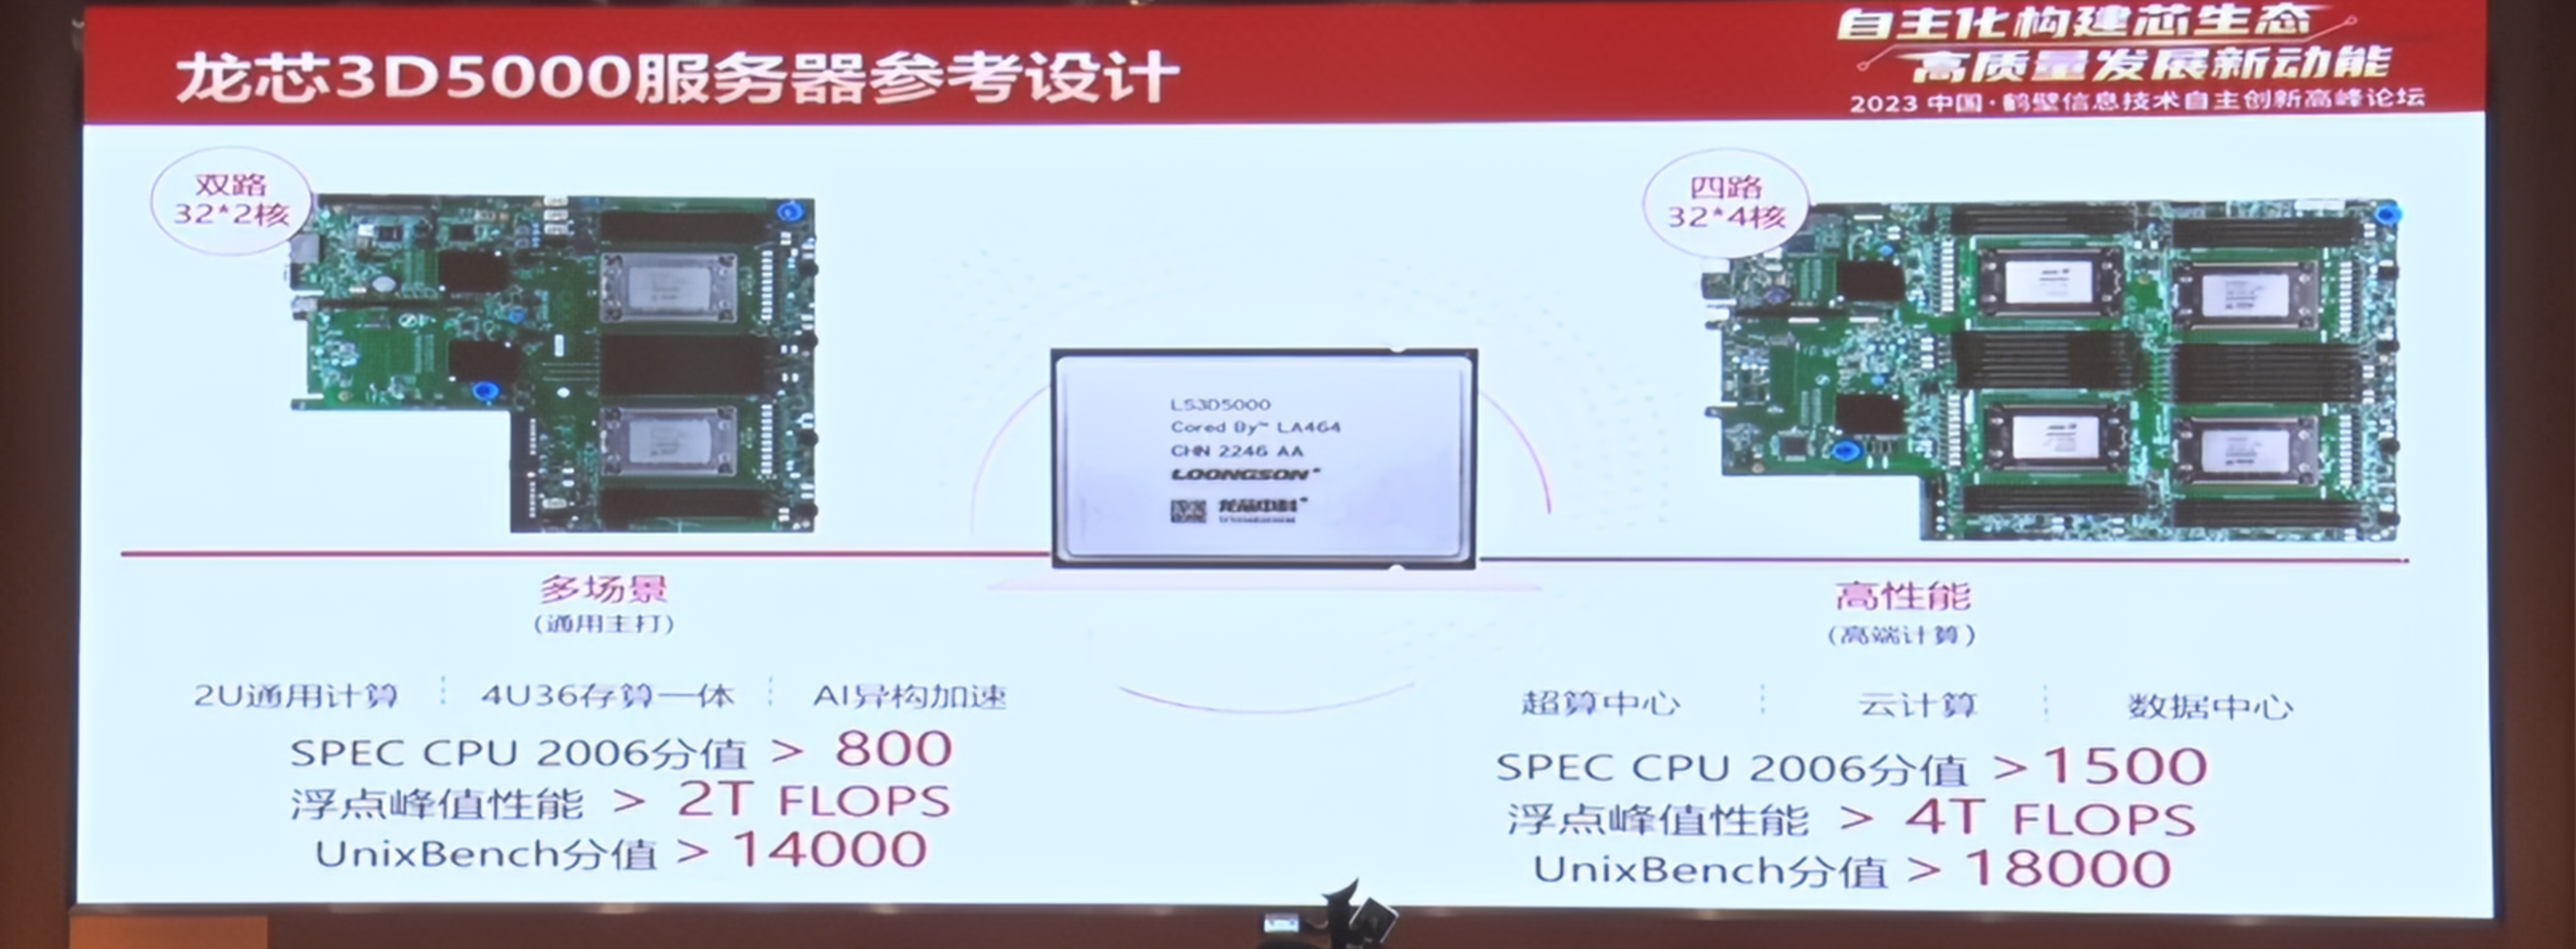 Loongson 3D5000: архитектура и возможности 32-ядерного серверного процессора из Китая - 5